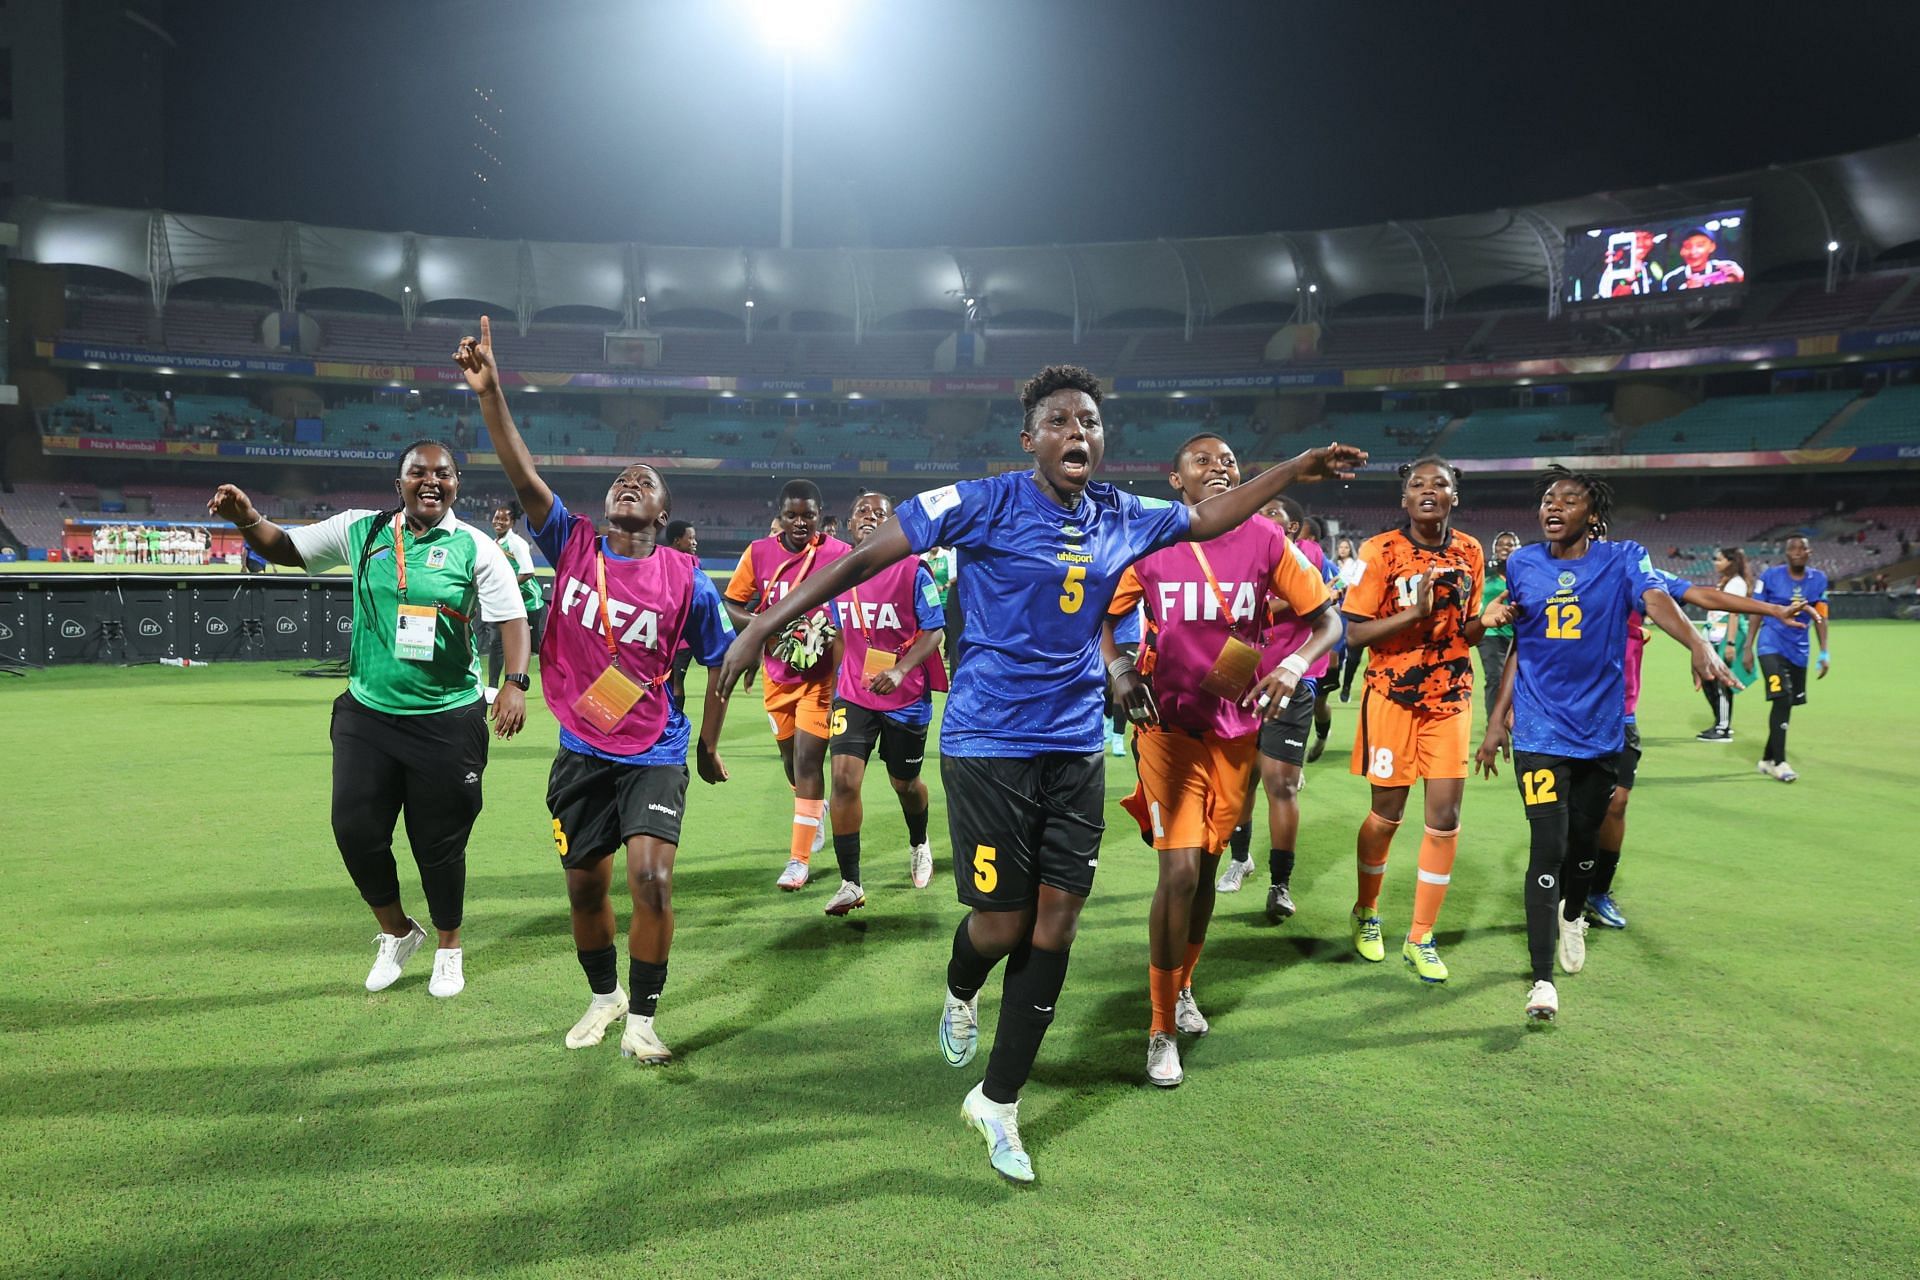 अपने पहले विश्व कप क्वार्टरफाइनल में पहुंचने की खुशी मनातीं तंजानिया की टीम।